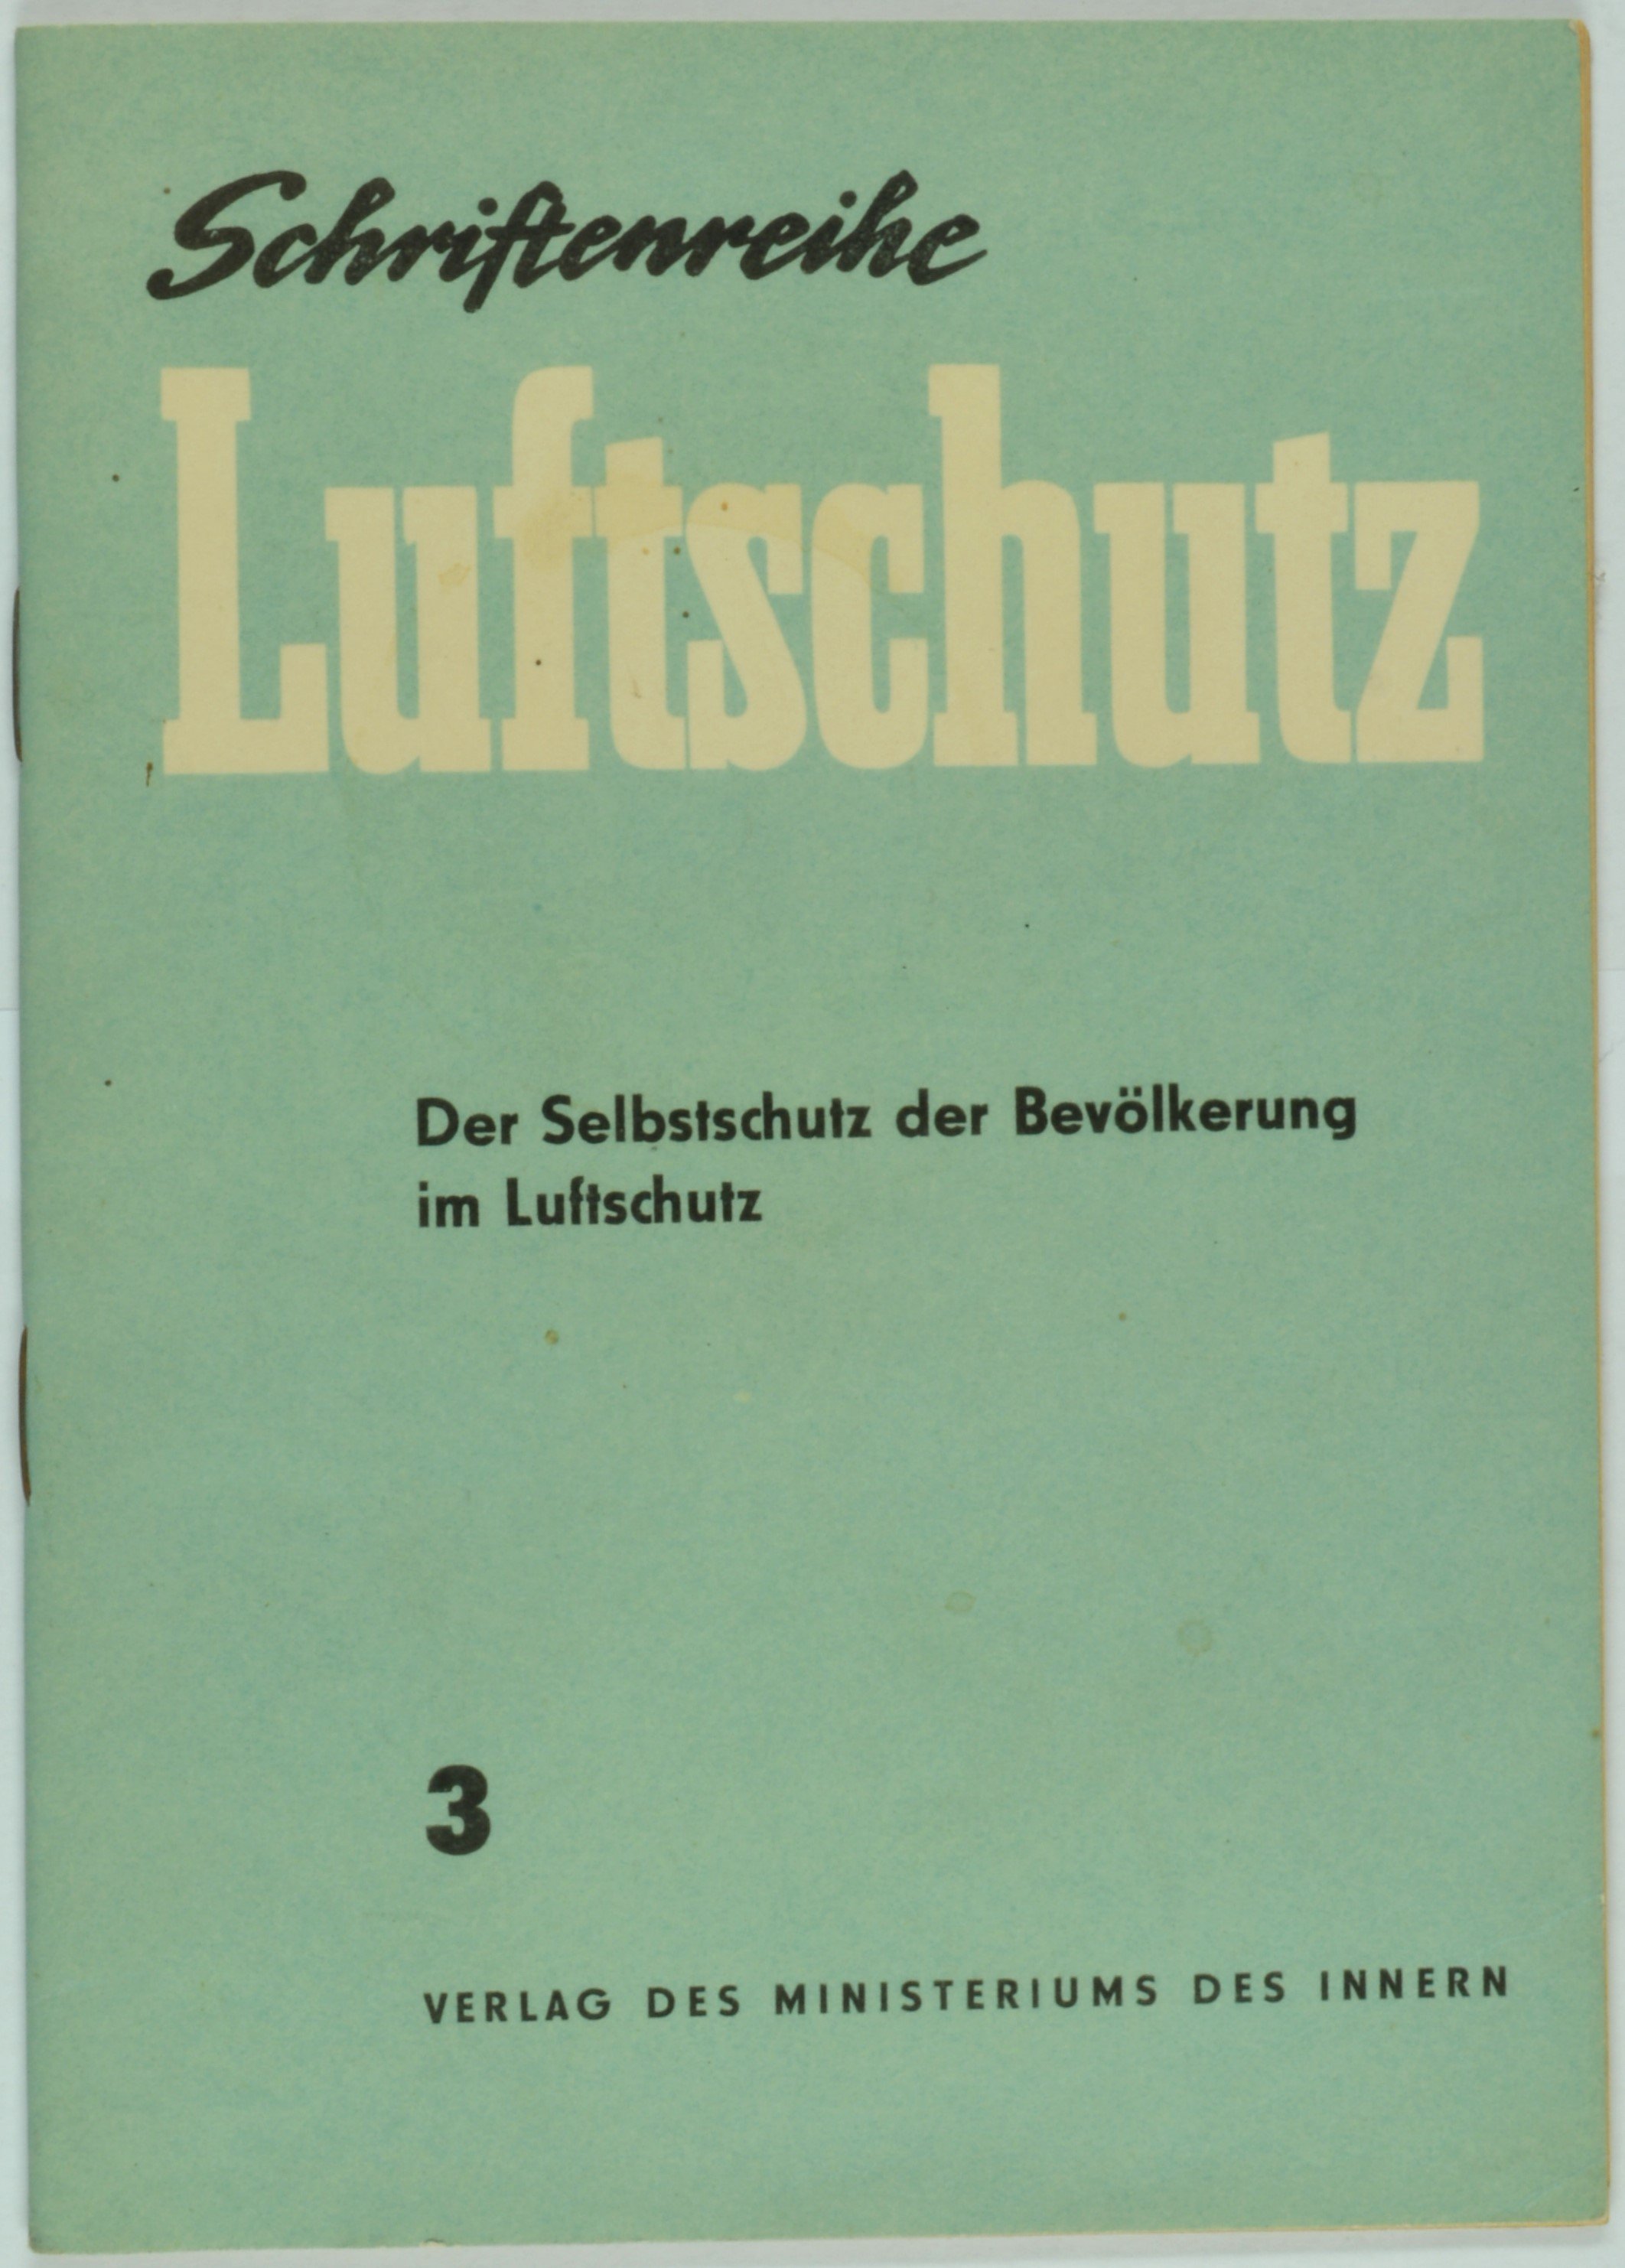 Broschüre "Schriftenreihe Luftschutz" 3 (DDR Geschichtsmuseum im Dokumentationszentrum Perleberg CC BY-SA)